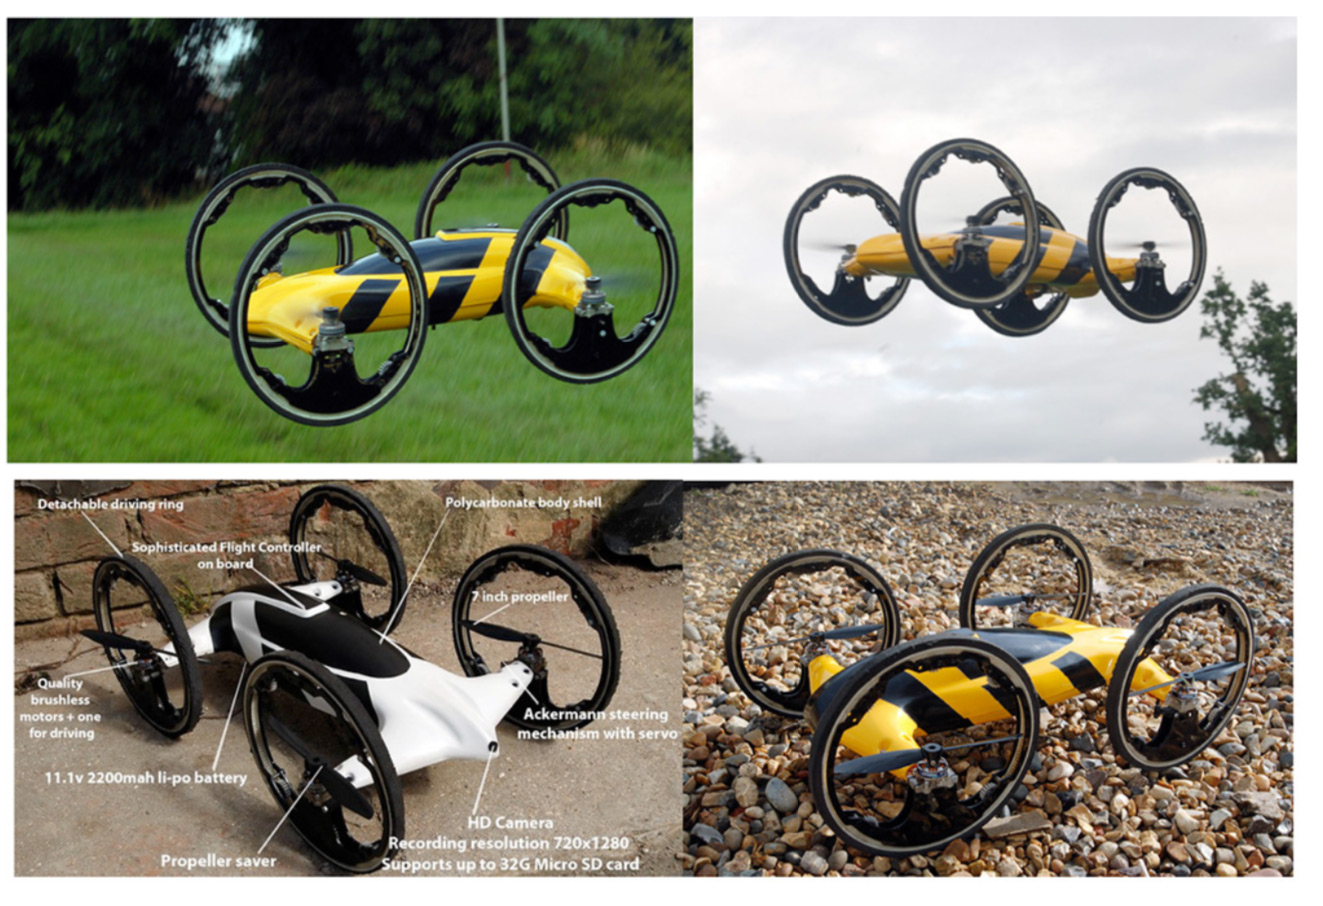 B-Car flying car concept